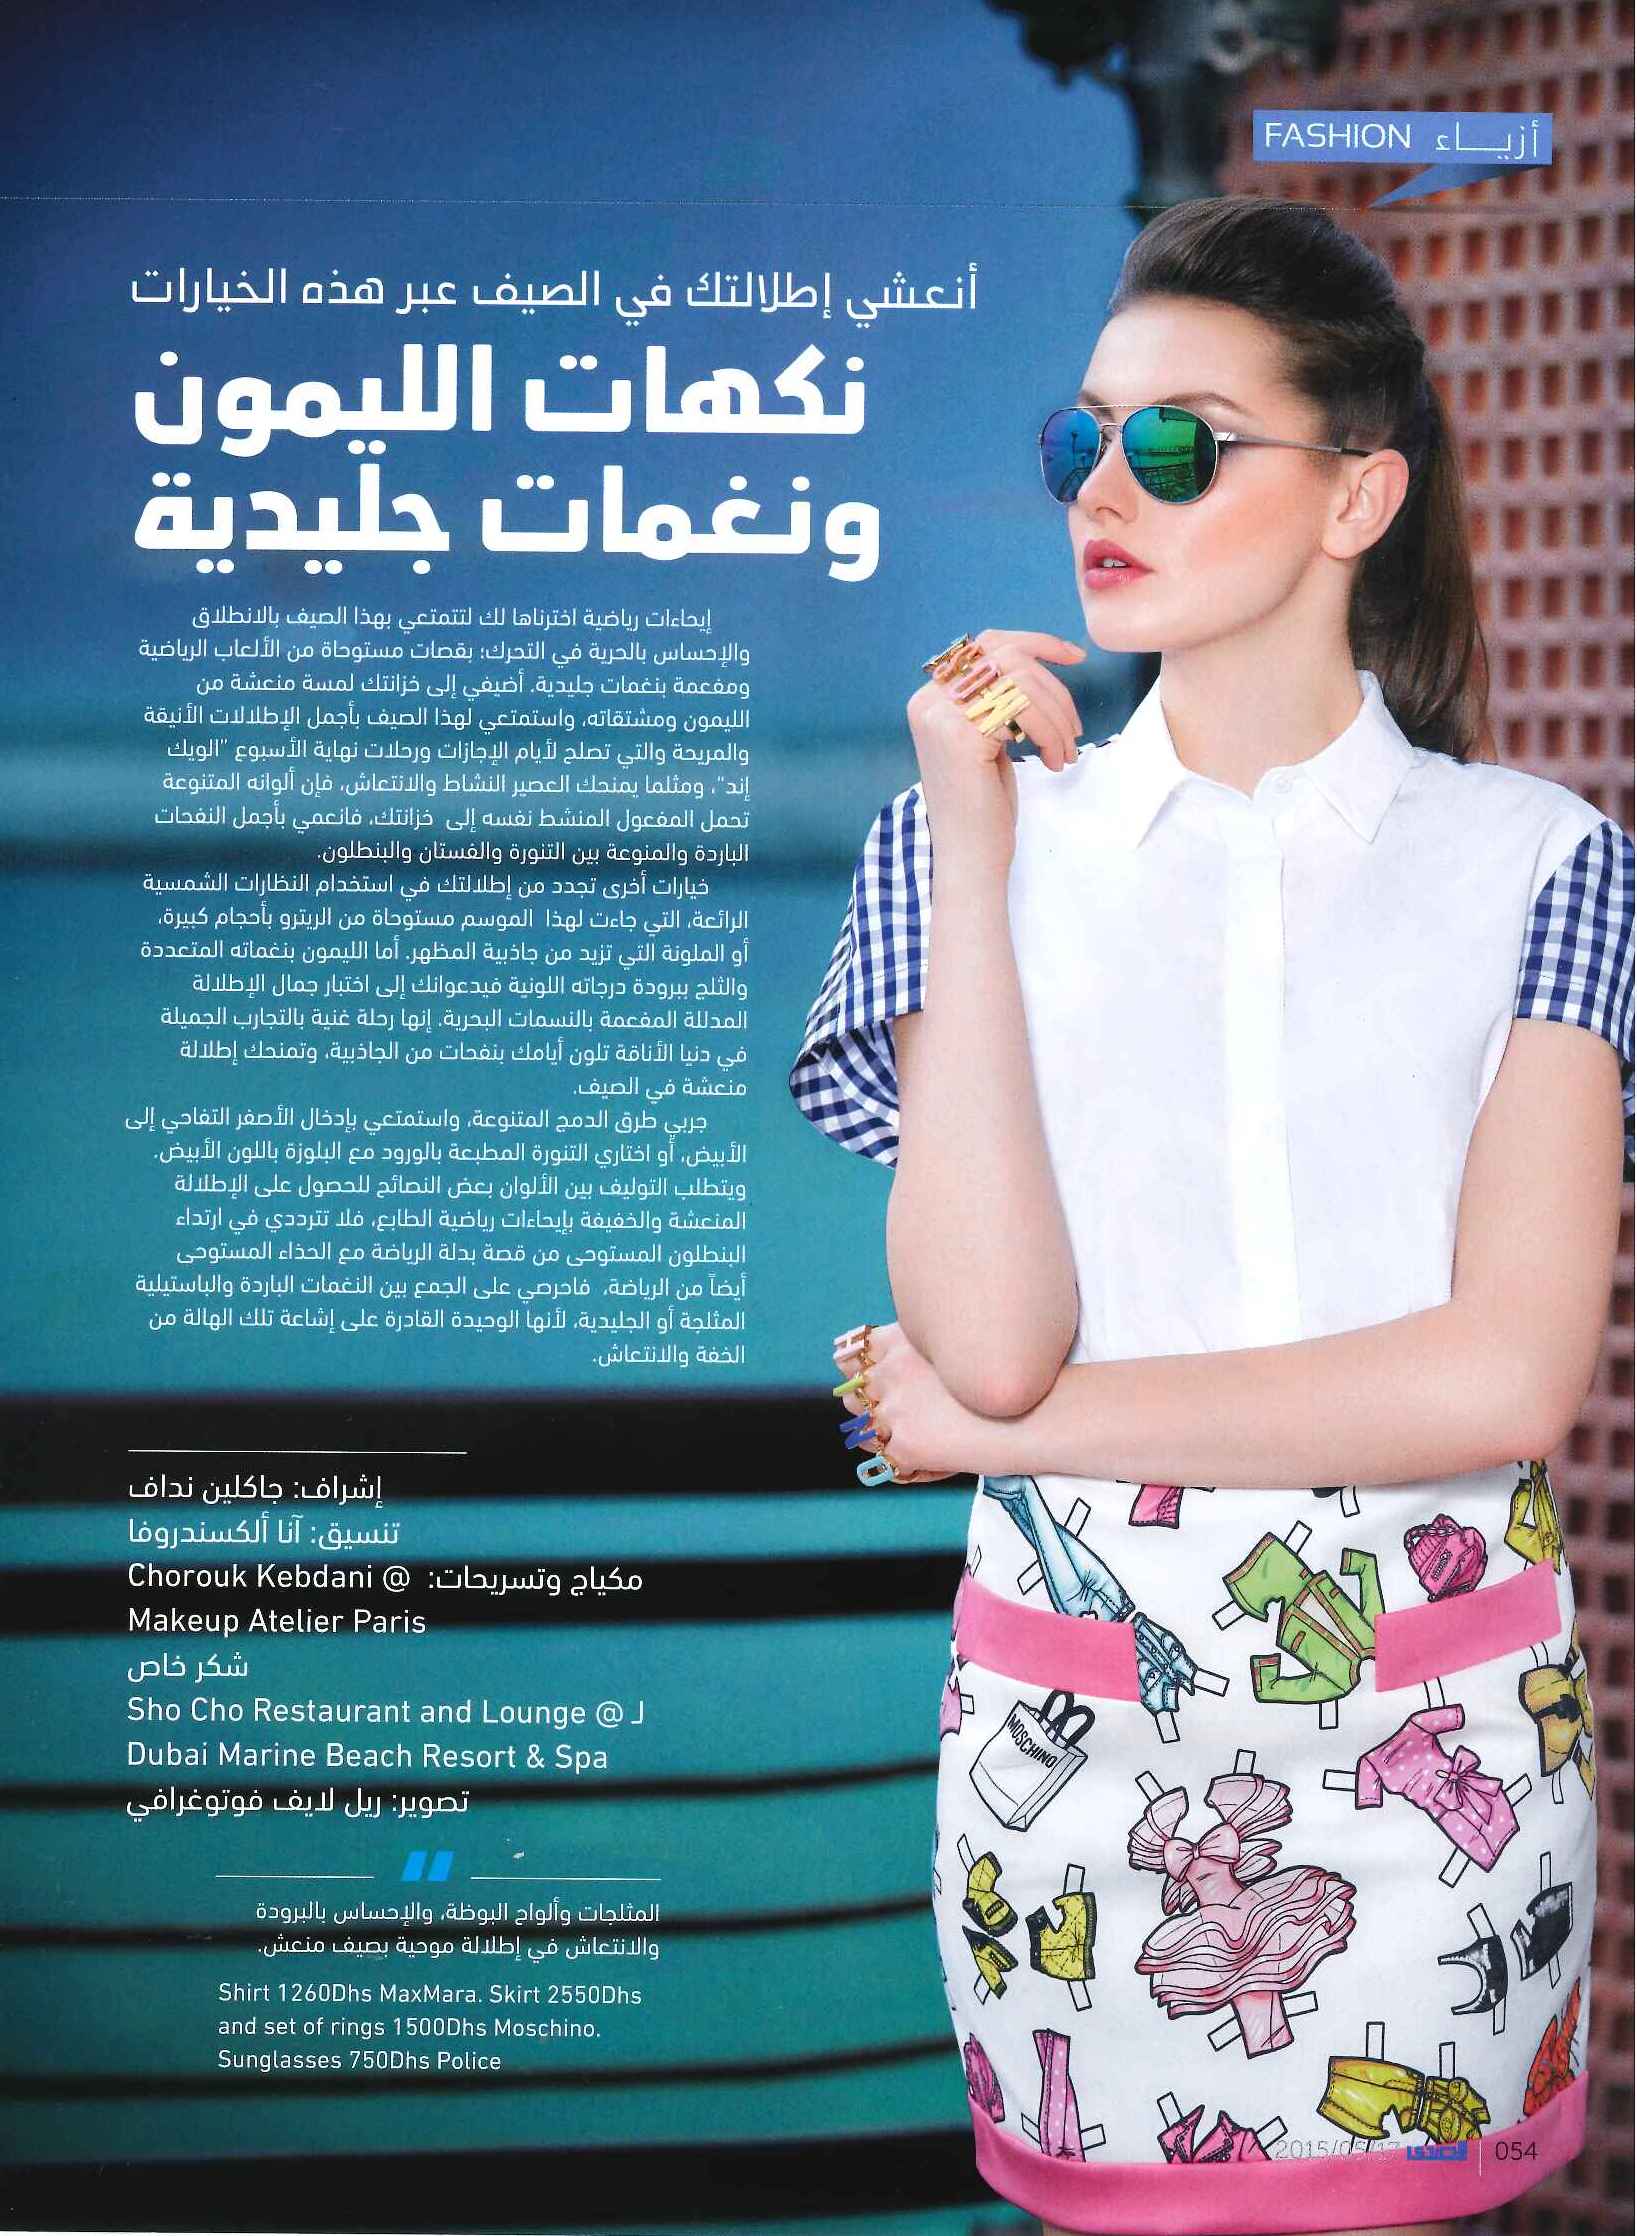 FLC Models & Talents - Print Campaigns - Al Sada - Marina May 15